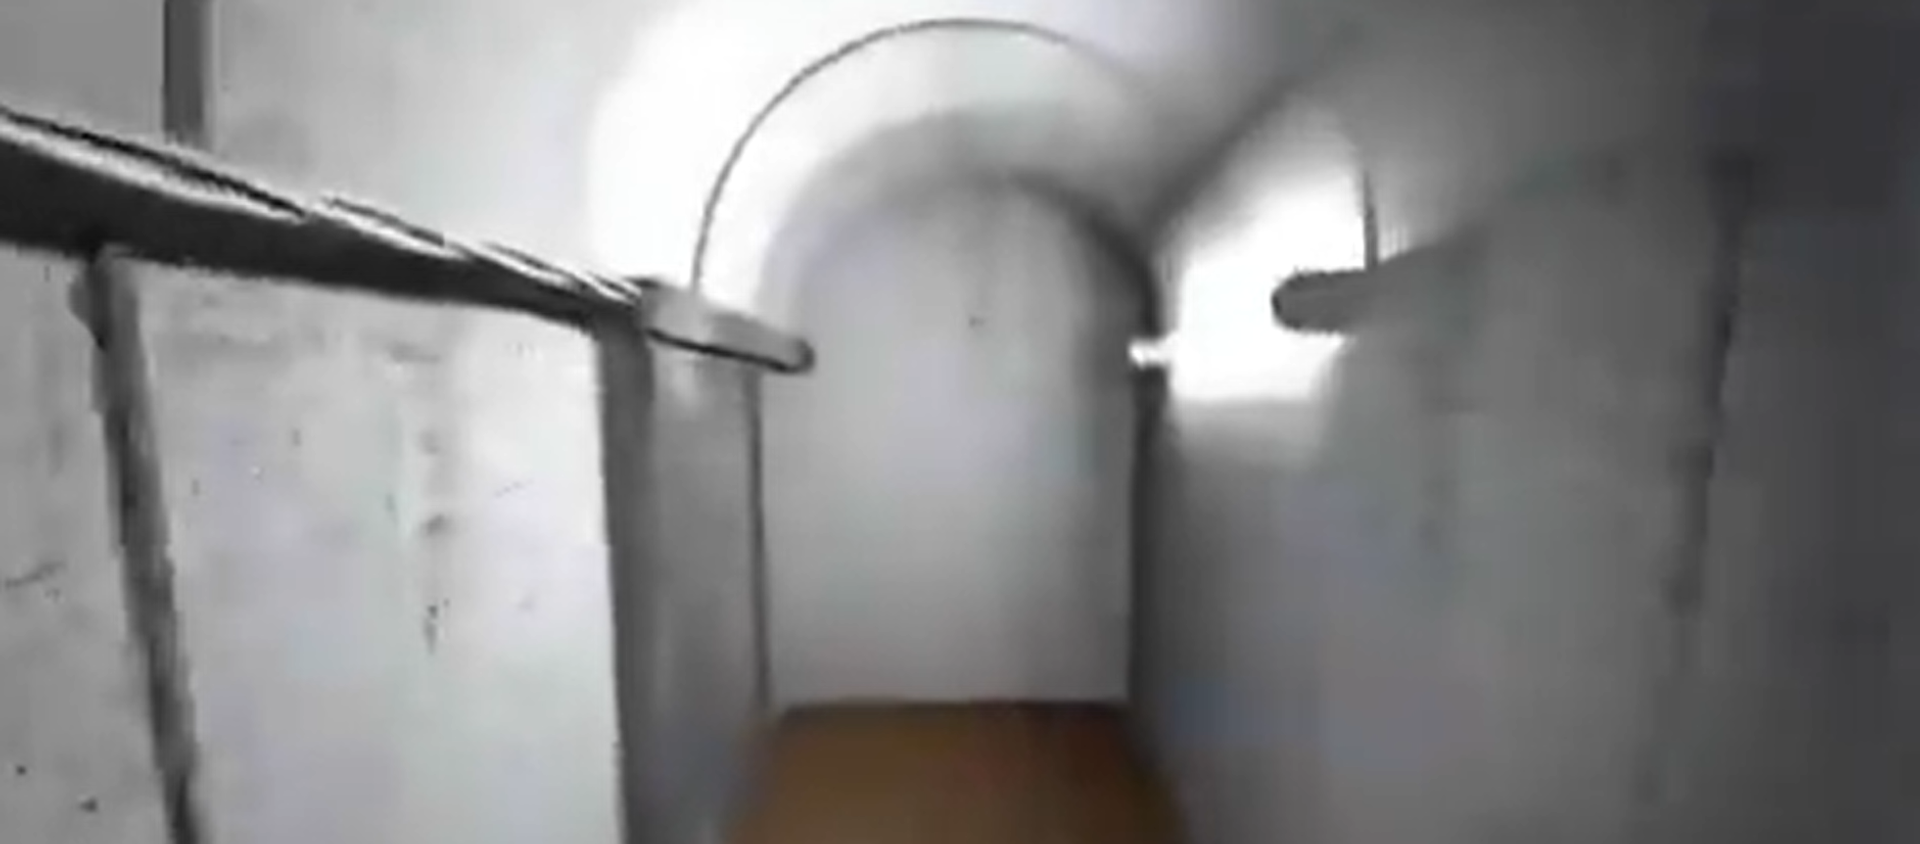 Тунел Хамаса - Sputnik Србија, 1920, 17.05.2021